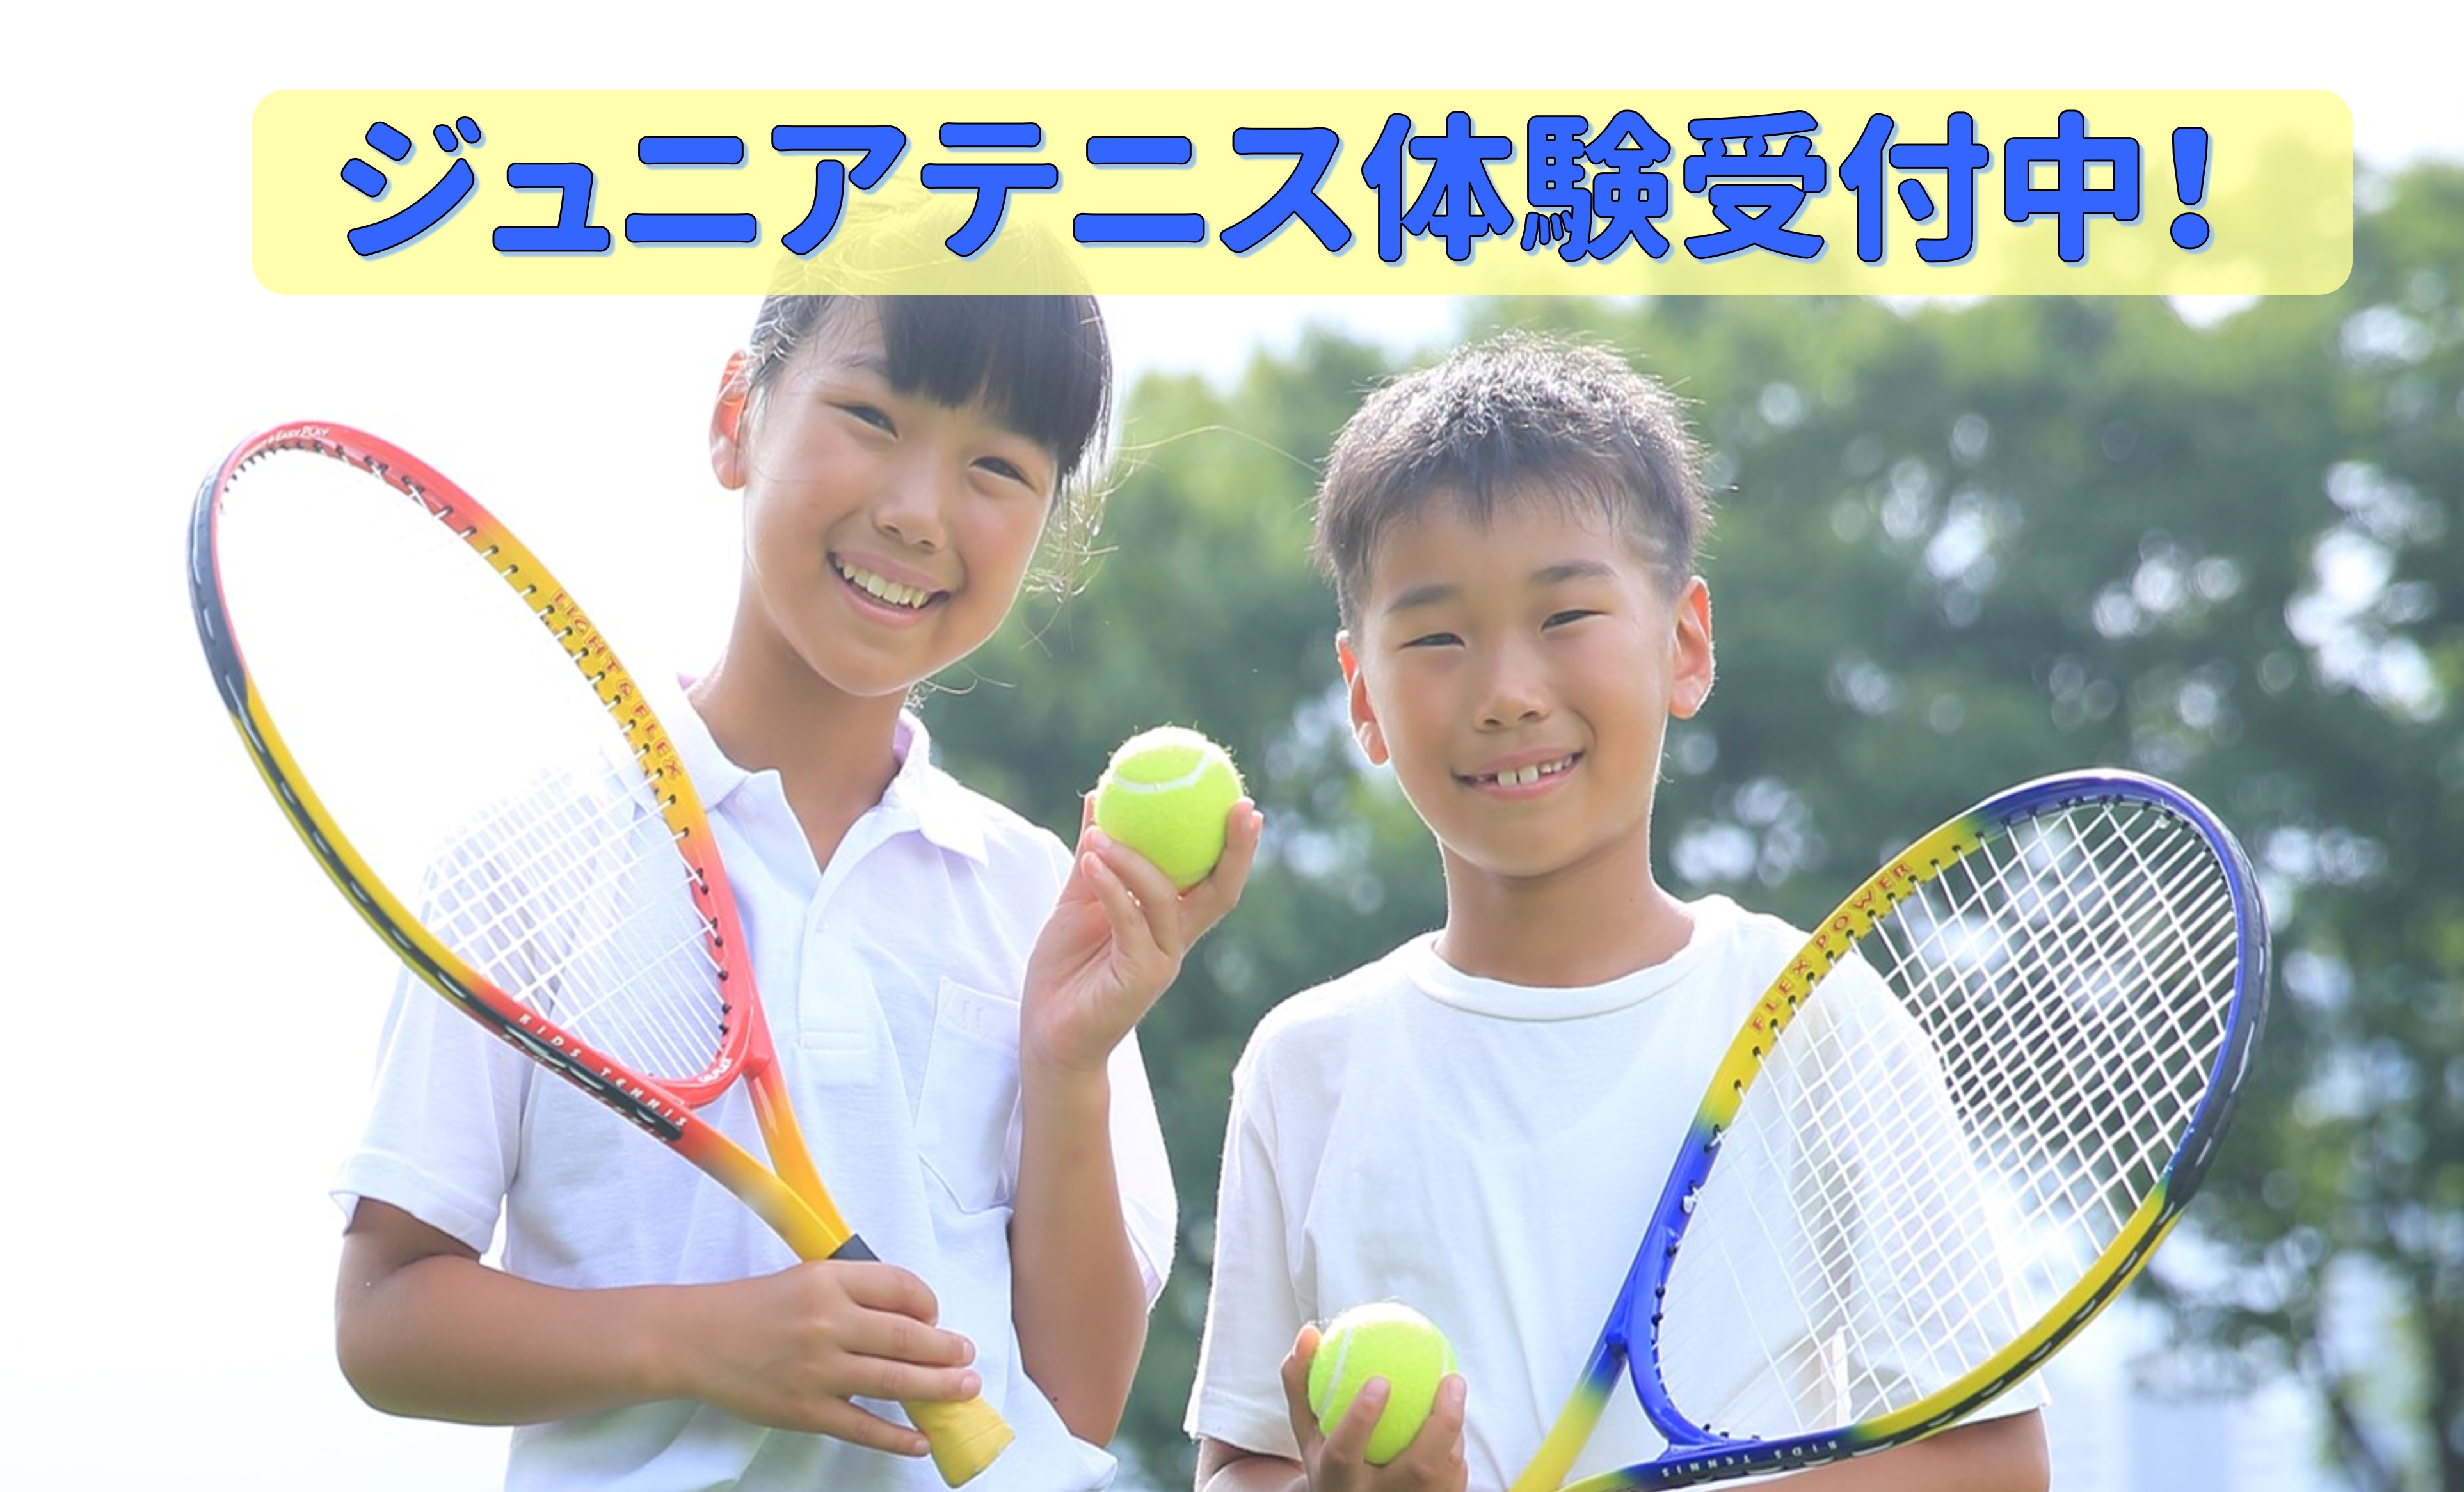 テニススクール体験受付中!